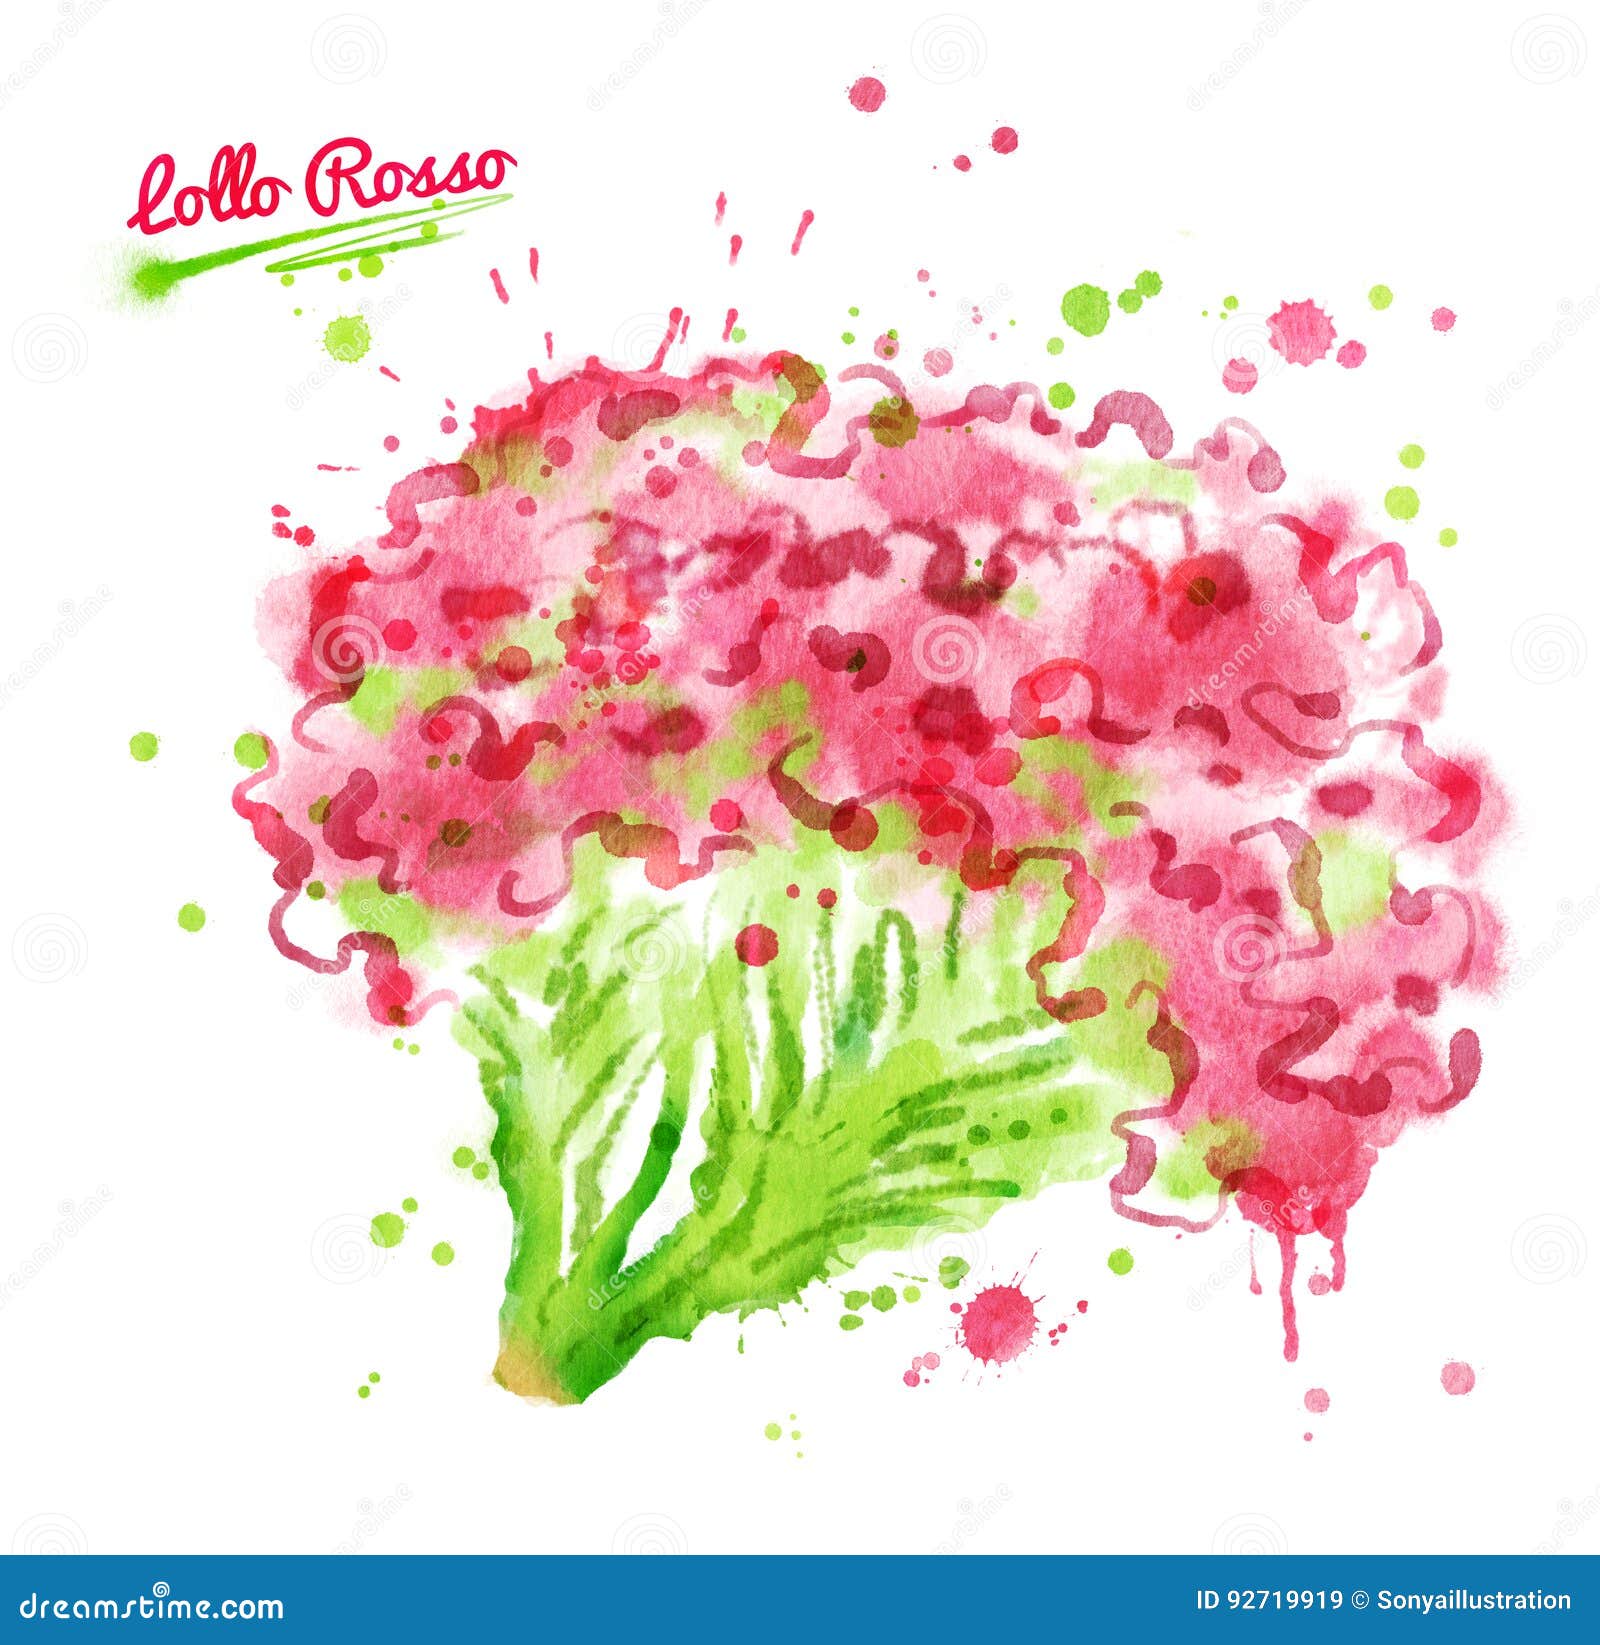 watercolor  of lollo rosso salad